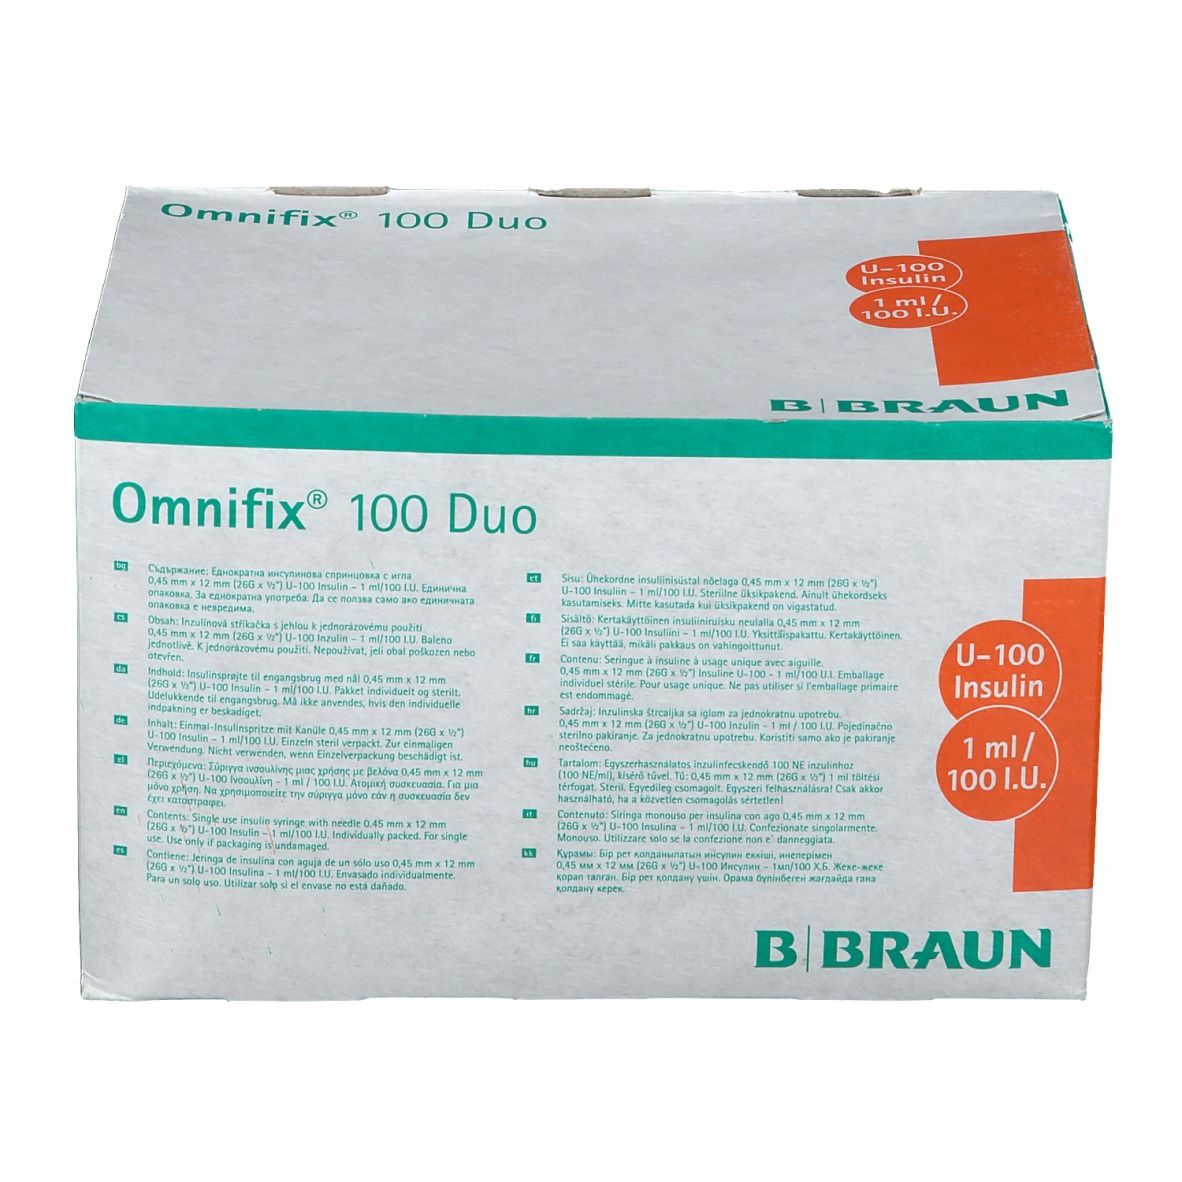 Omnifix® 100 Duo